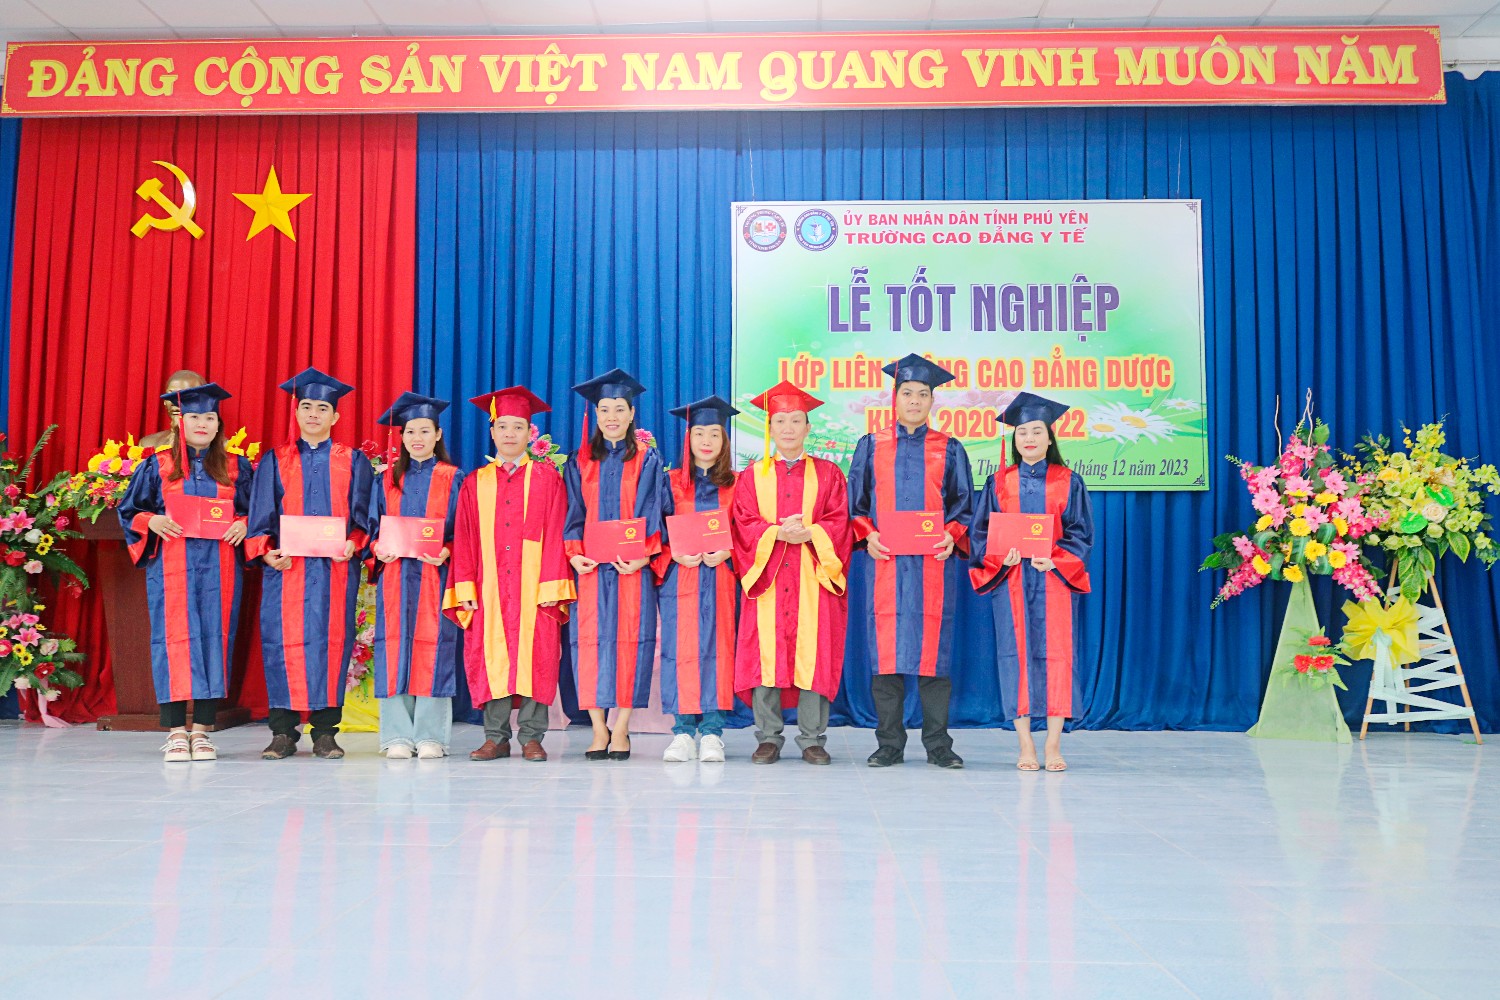 Lễ công nhận và trao bằng tốt nghiệp lớp liên kết Ninh Thuận (2020 - 2022)